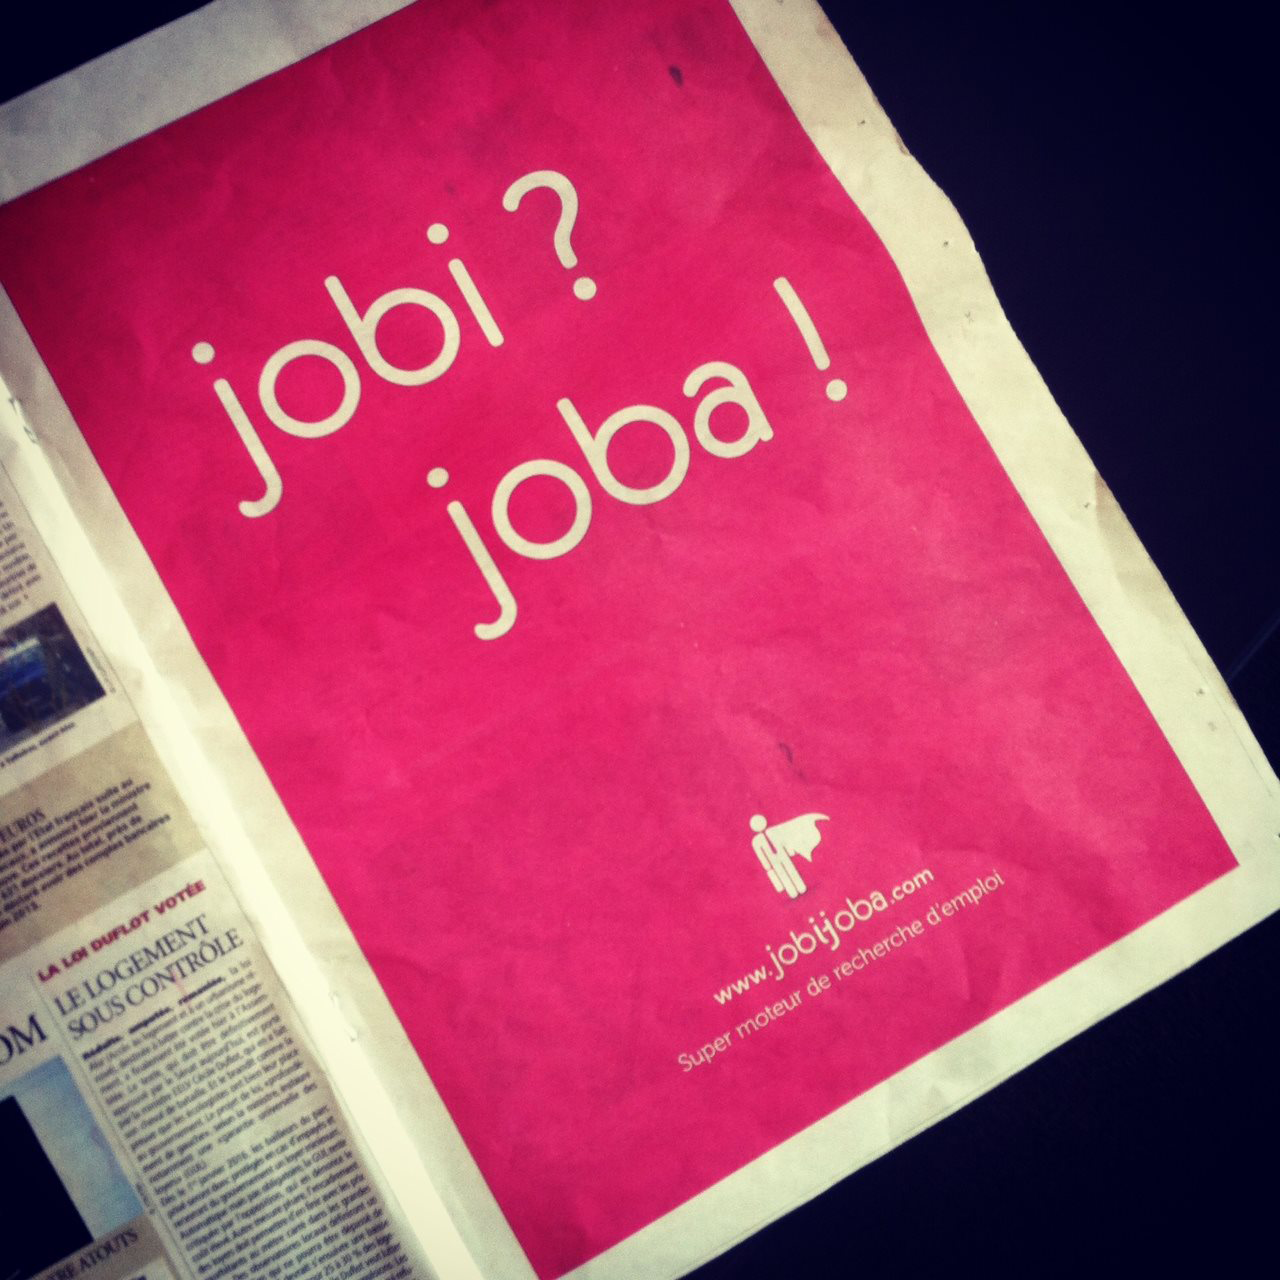 JobiJoba, moteur dans la recherche d’emploi en Aquitaine